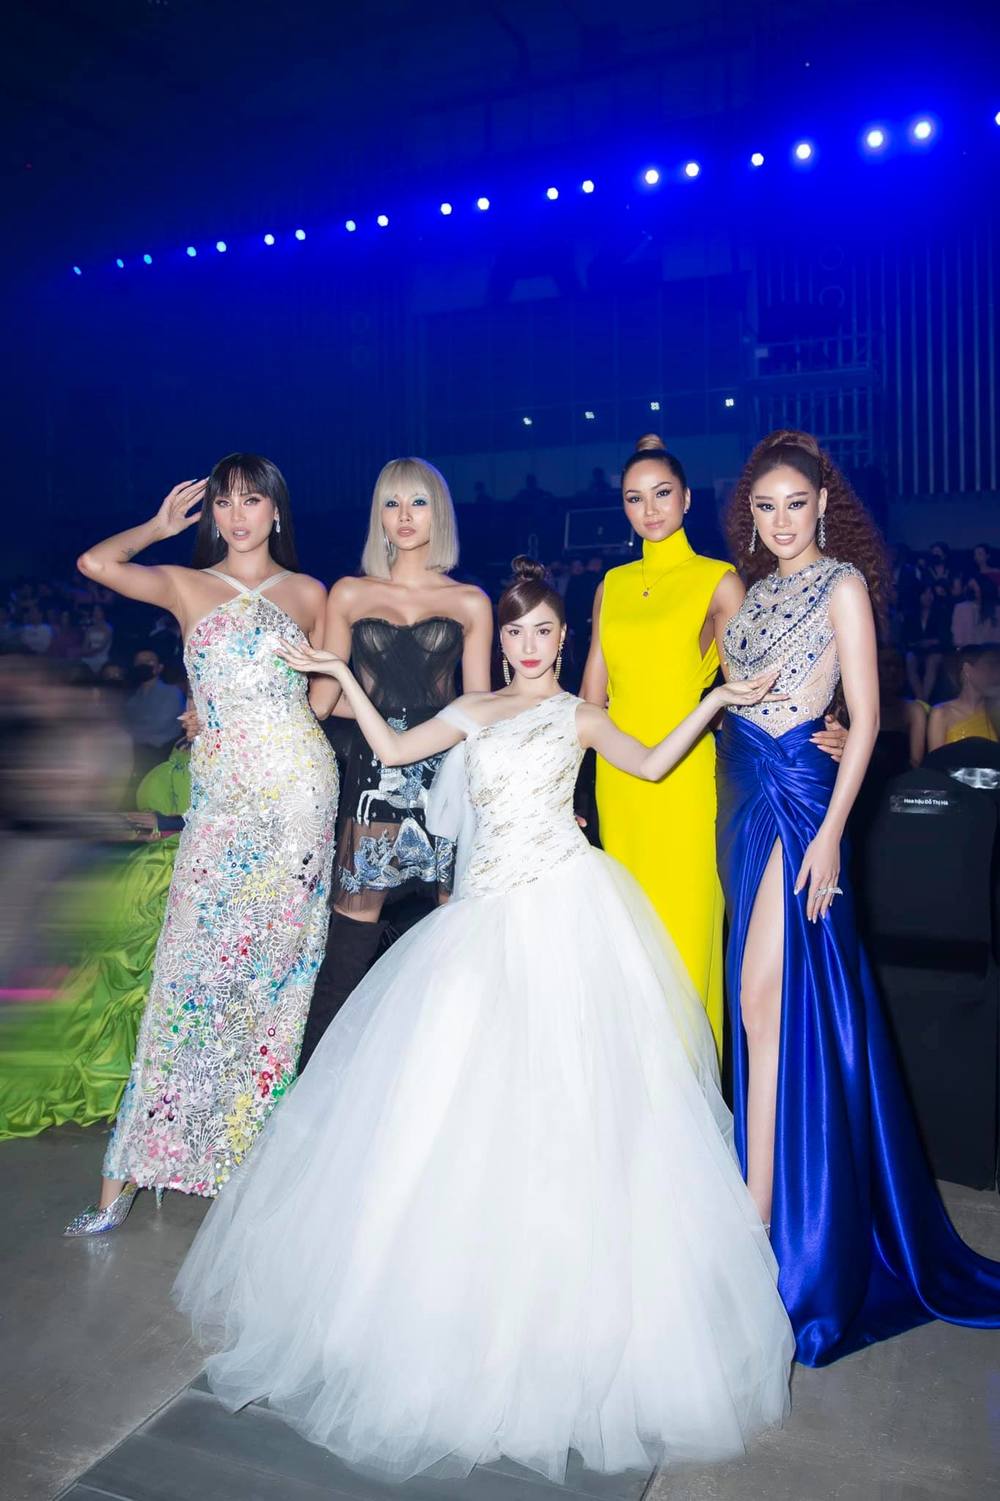 Năm 2021, tại WeChoice Awards, Hòa Minzy lại 'gây sốt' MXH với khoảnh khắc bên 4 mỹ nhân chân dài: Võ Hoàng Yến, Hoàng Thùy, H'Hen Niê và Khánh Vân.